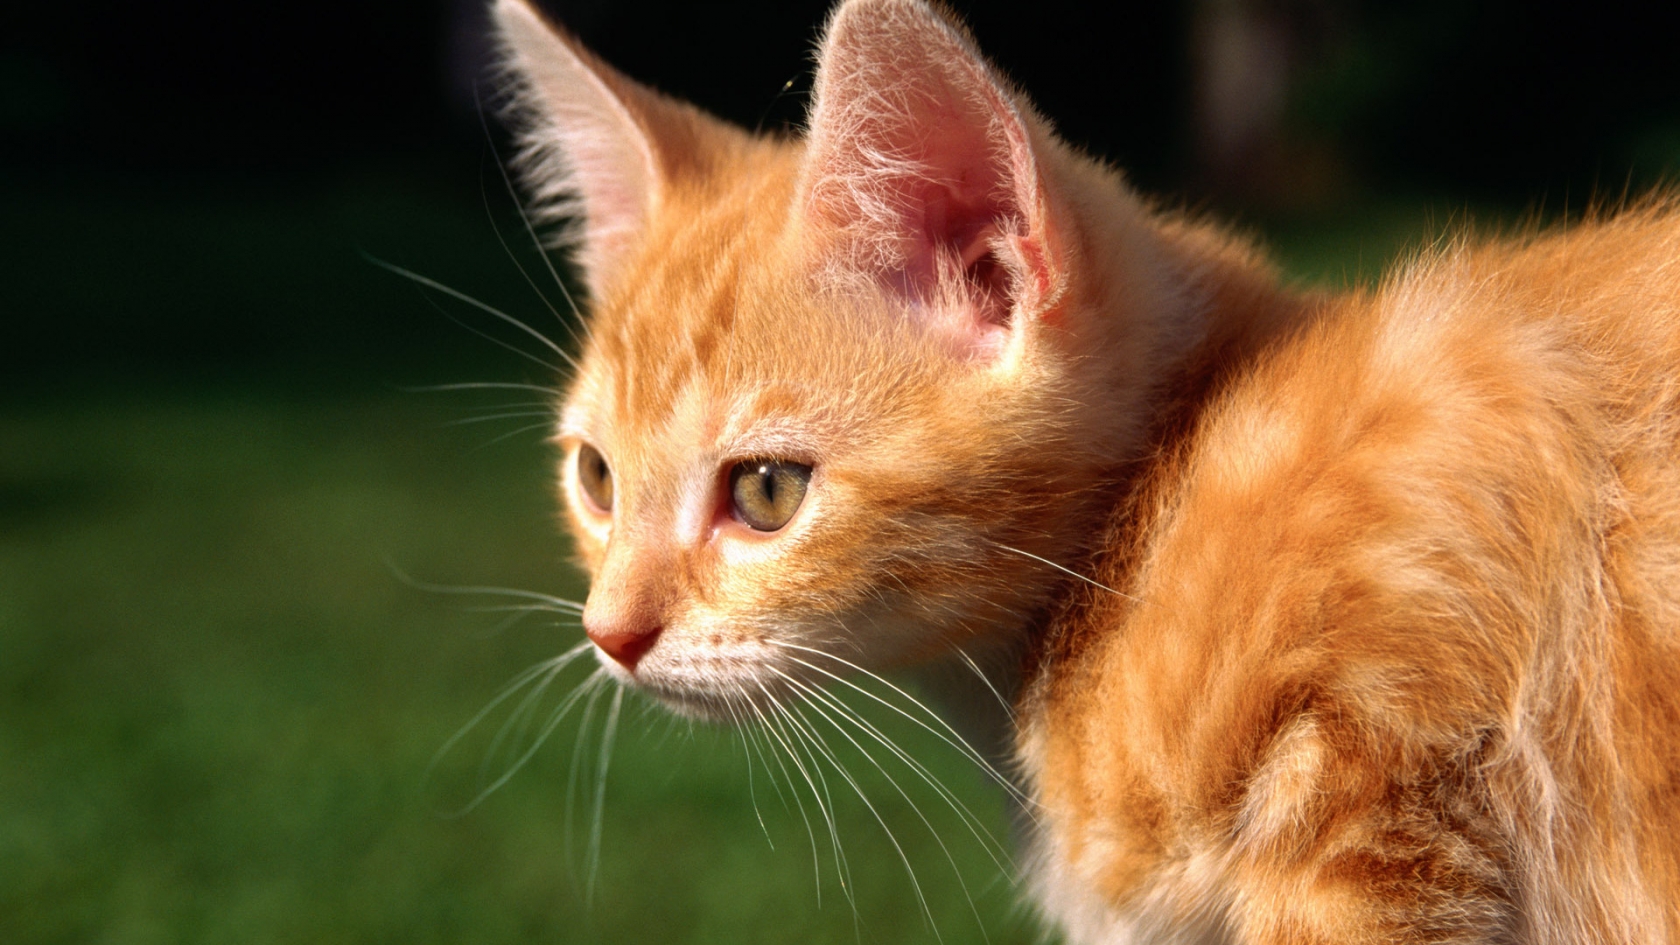 Red Kitten for 1680 x 945 HDTV resolution